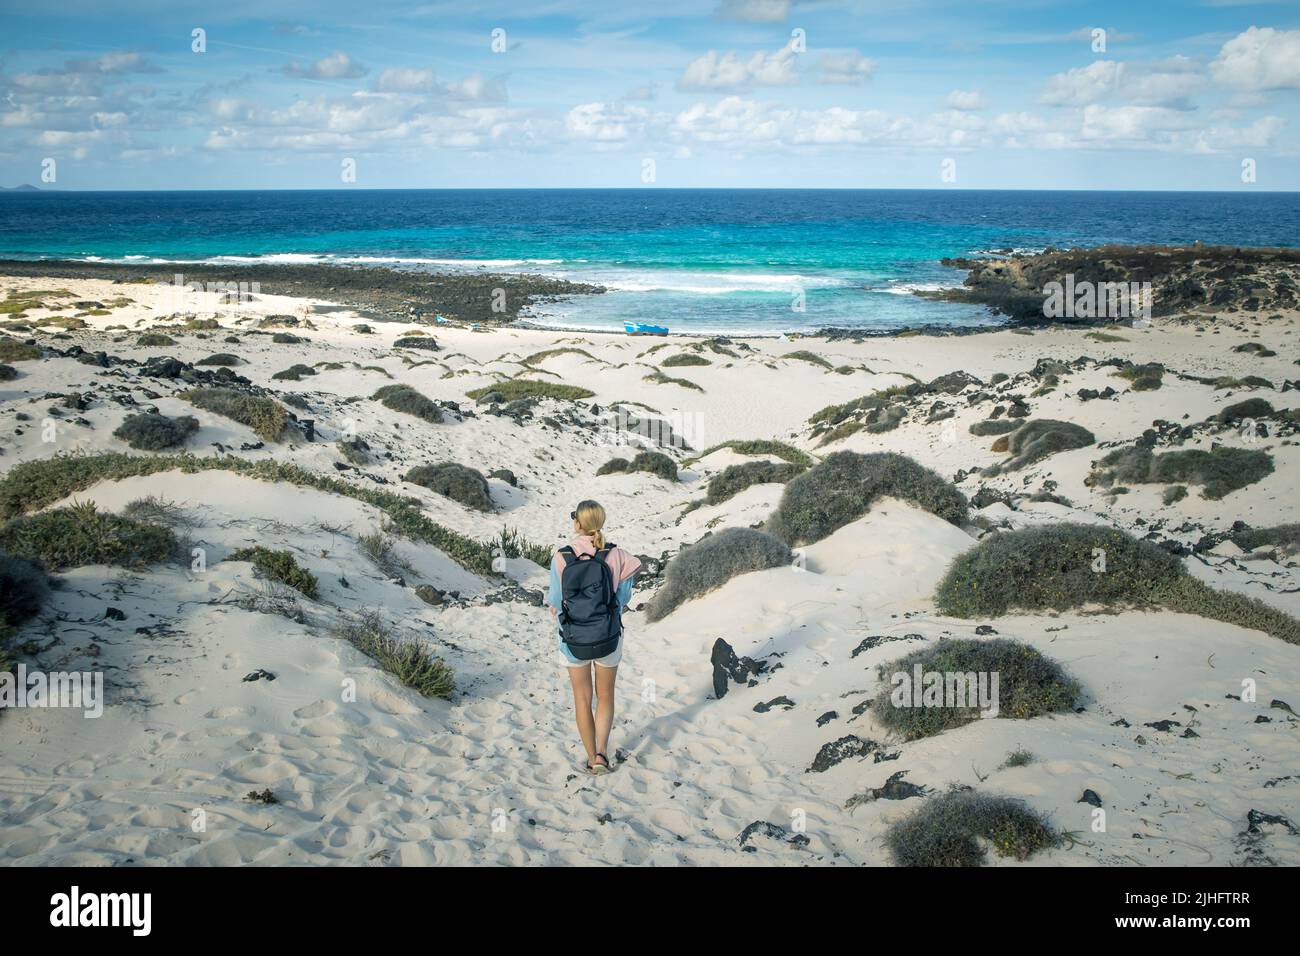 Turista mujer visitando la playa blanca de Caleta del Mojón Blanco. Playa de arena desértica y costa escarpada. Orzola, Lanzarote, Islas Canarias, España Foto de stock